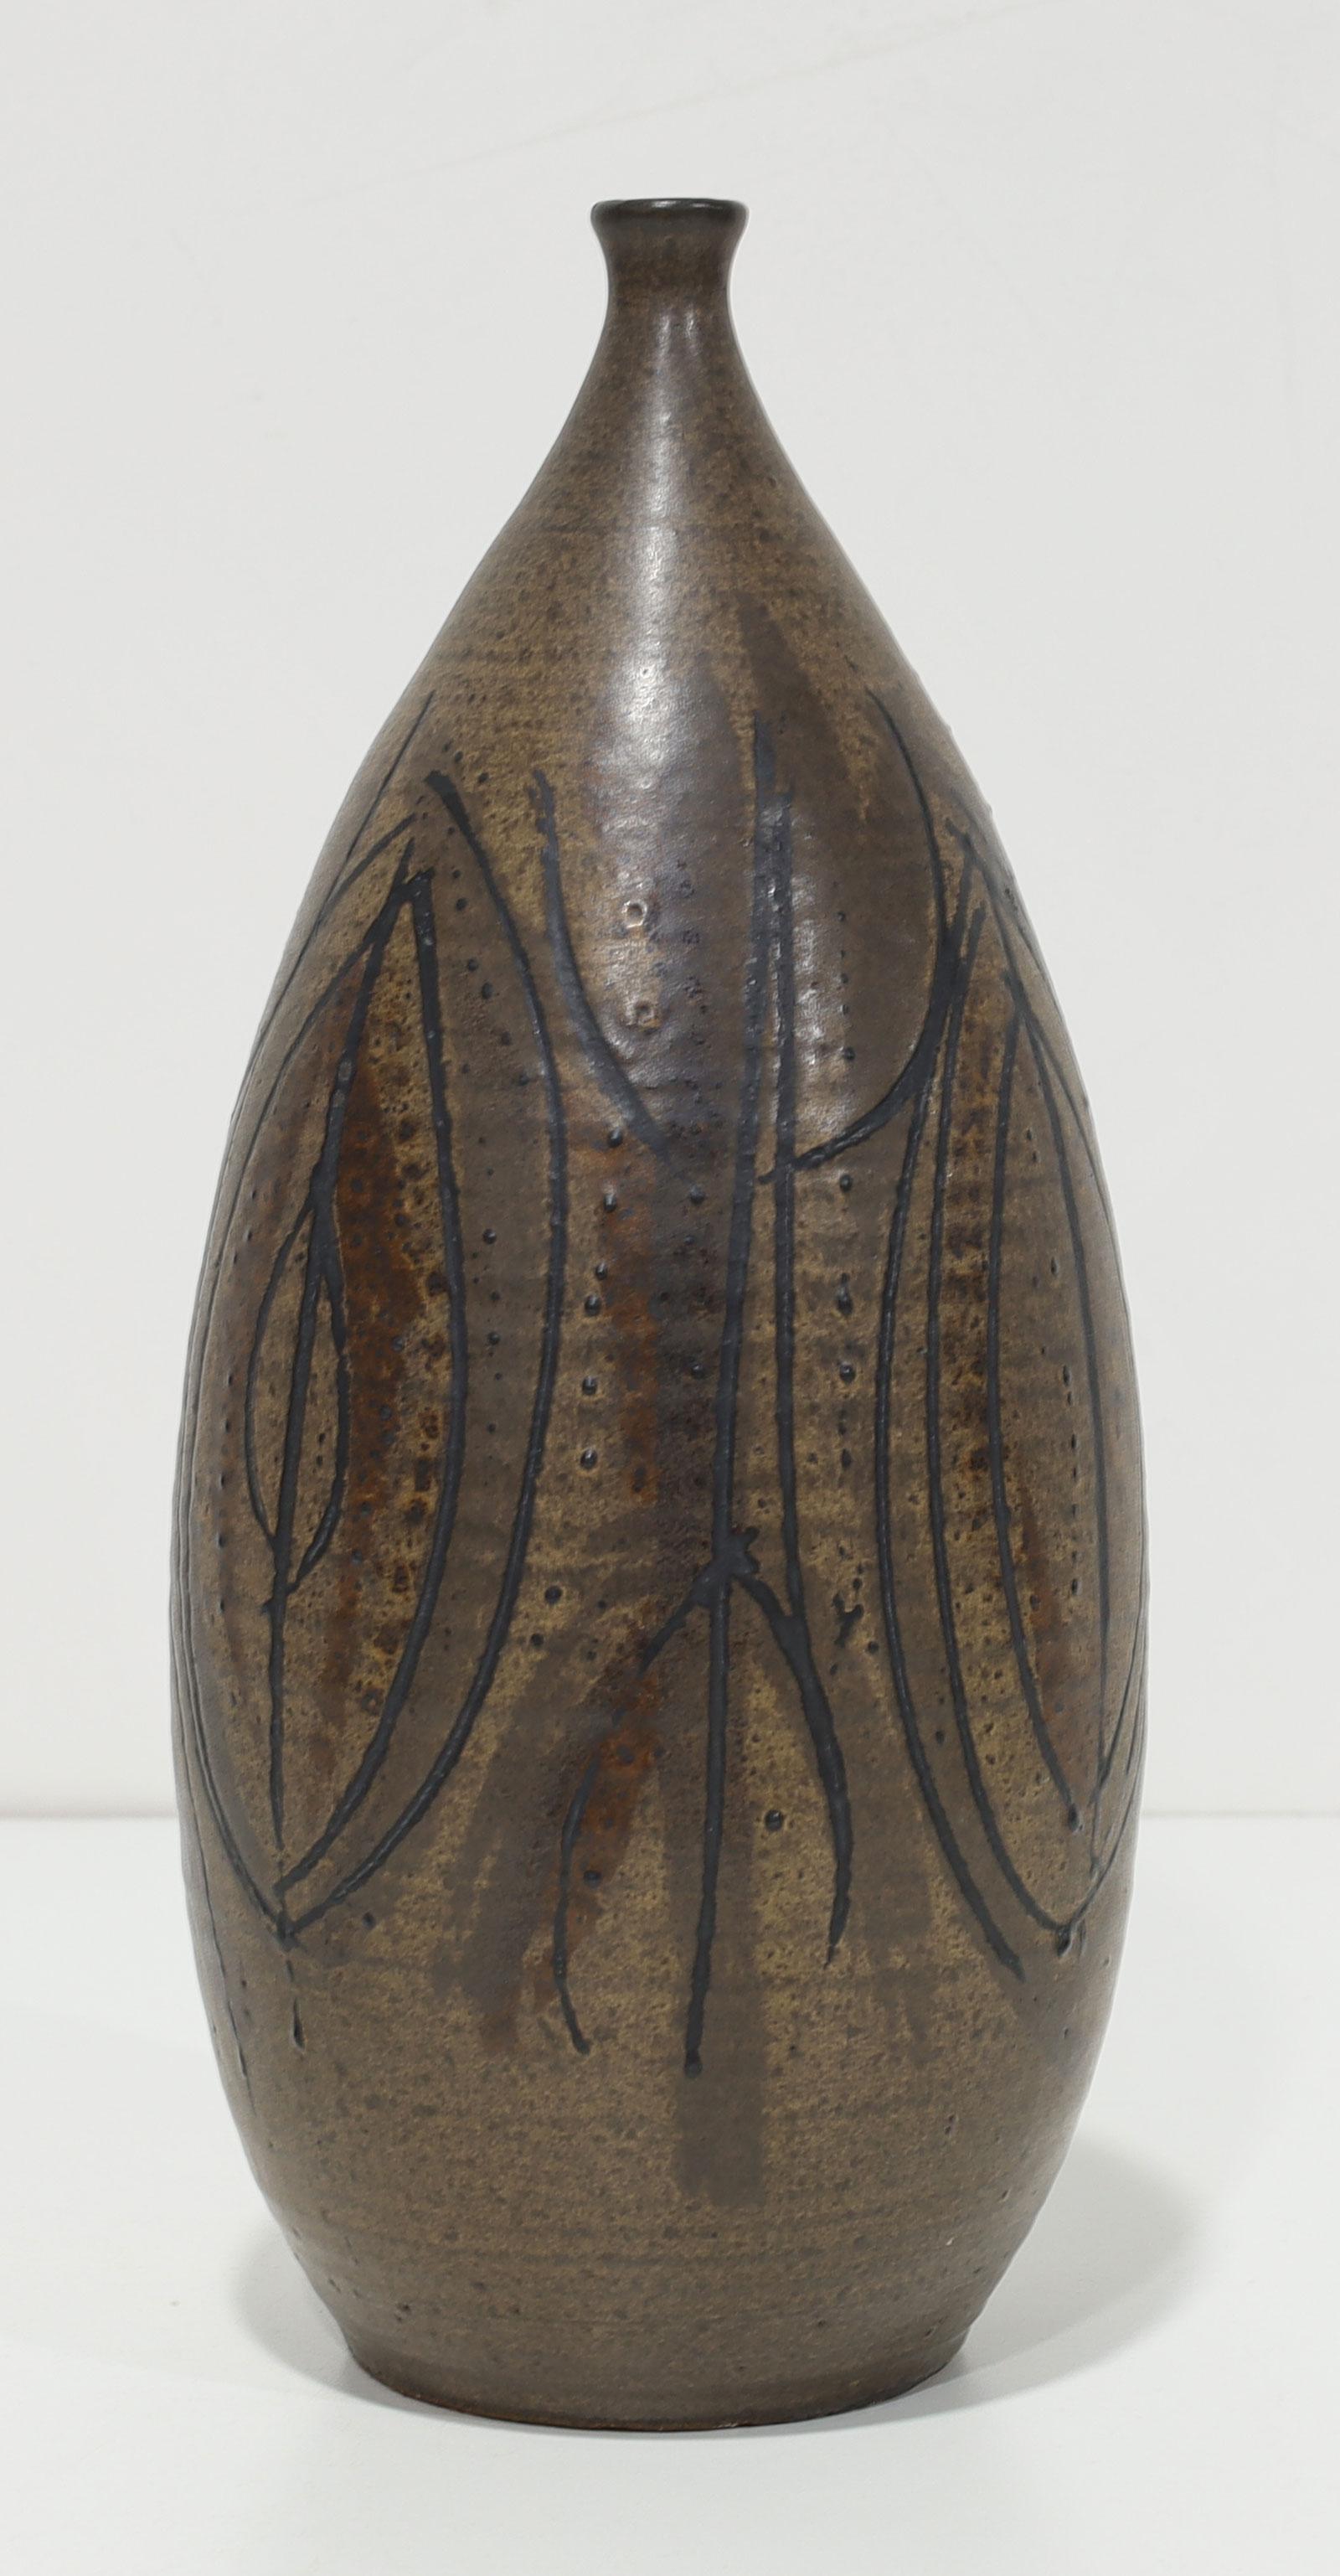 North American Clyde Burt Ceramic Vase For Sale